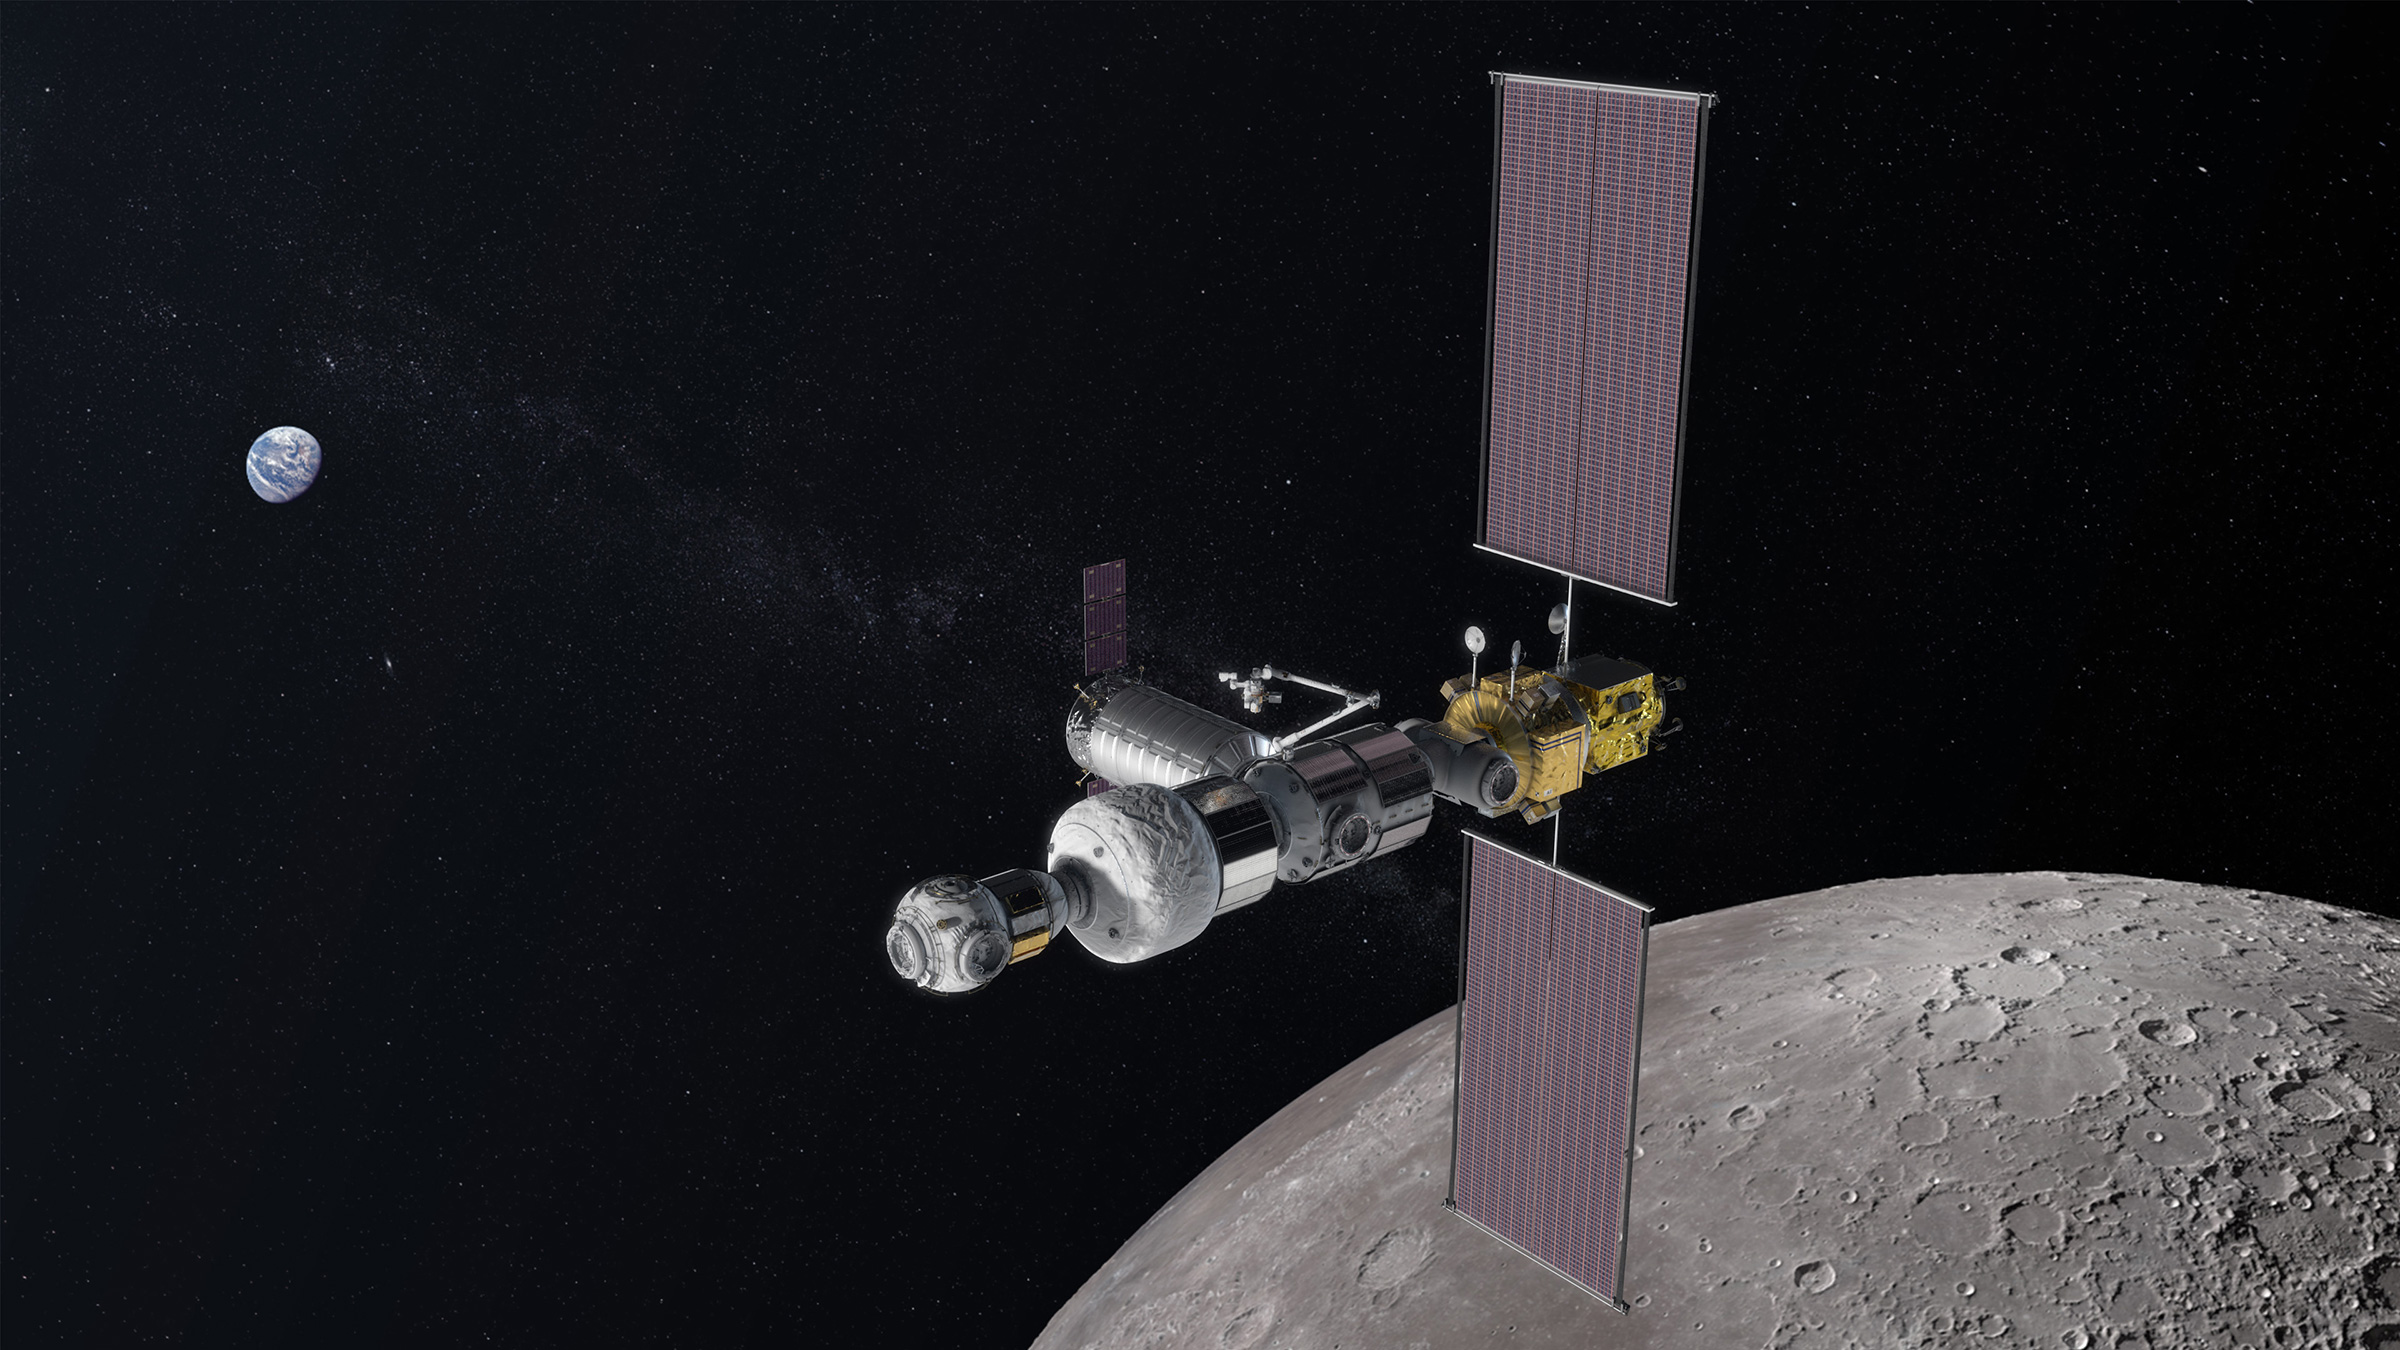 La station spatiale lunaire Gateway, projet dirigé par les États-Unis, est la prochaine grande mission internationale d'exploration spatiale habitée. C'est la première étape d'un plan ambitieux de la Nasa et des partenaires de la Station spatiale internationale, dont le Canada et l'ESA, qui vise à envoyer des humains dans l'espace plus loin que jamais auparavant. © Nasa